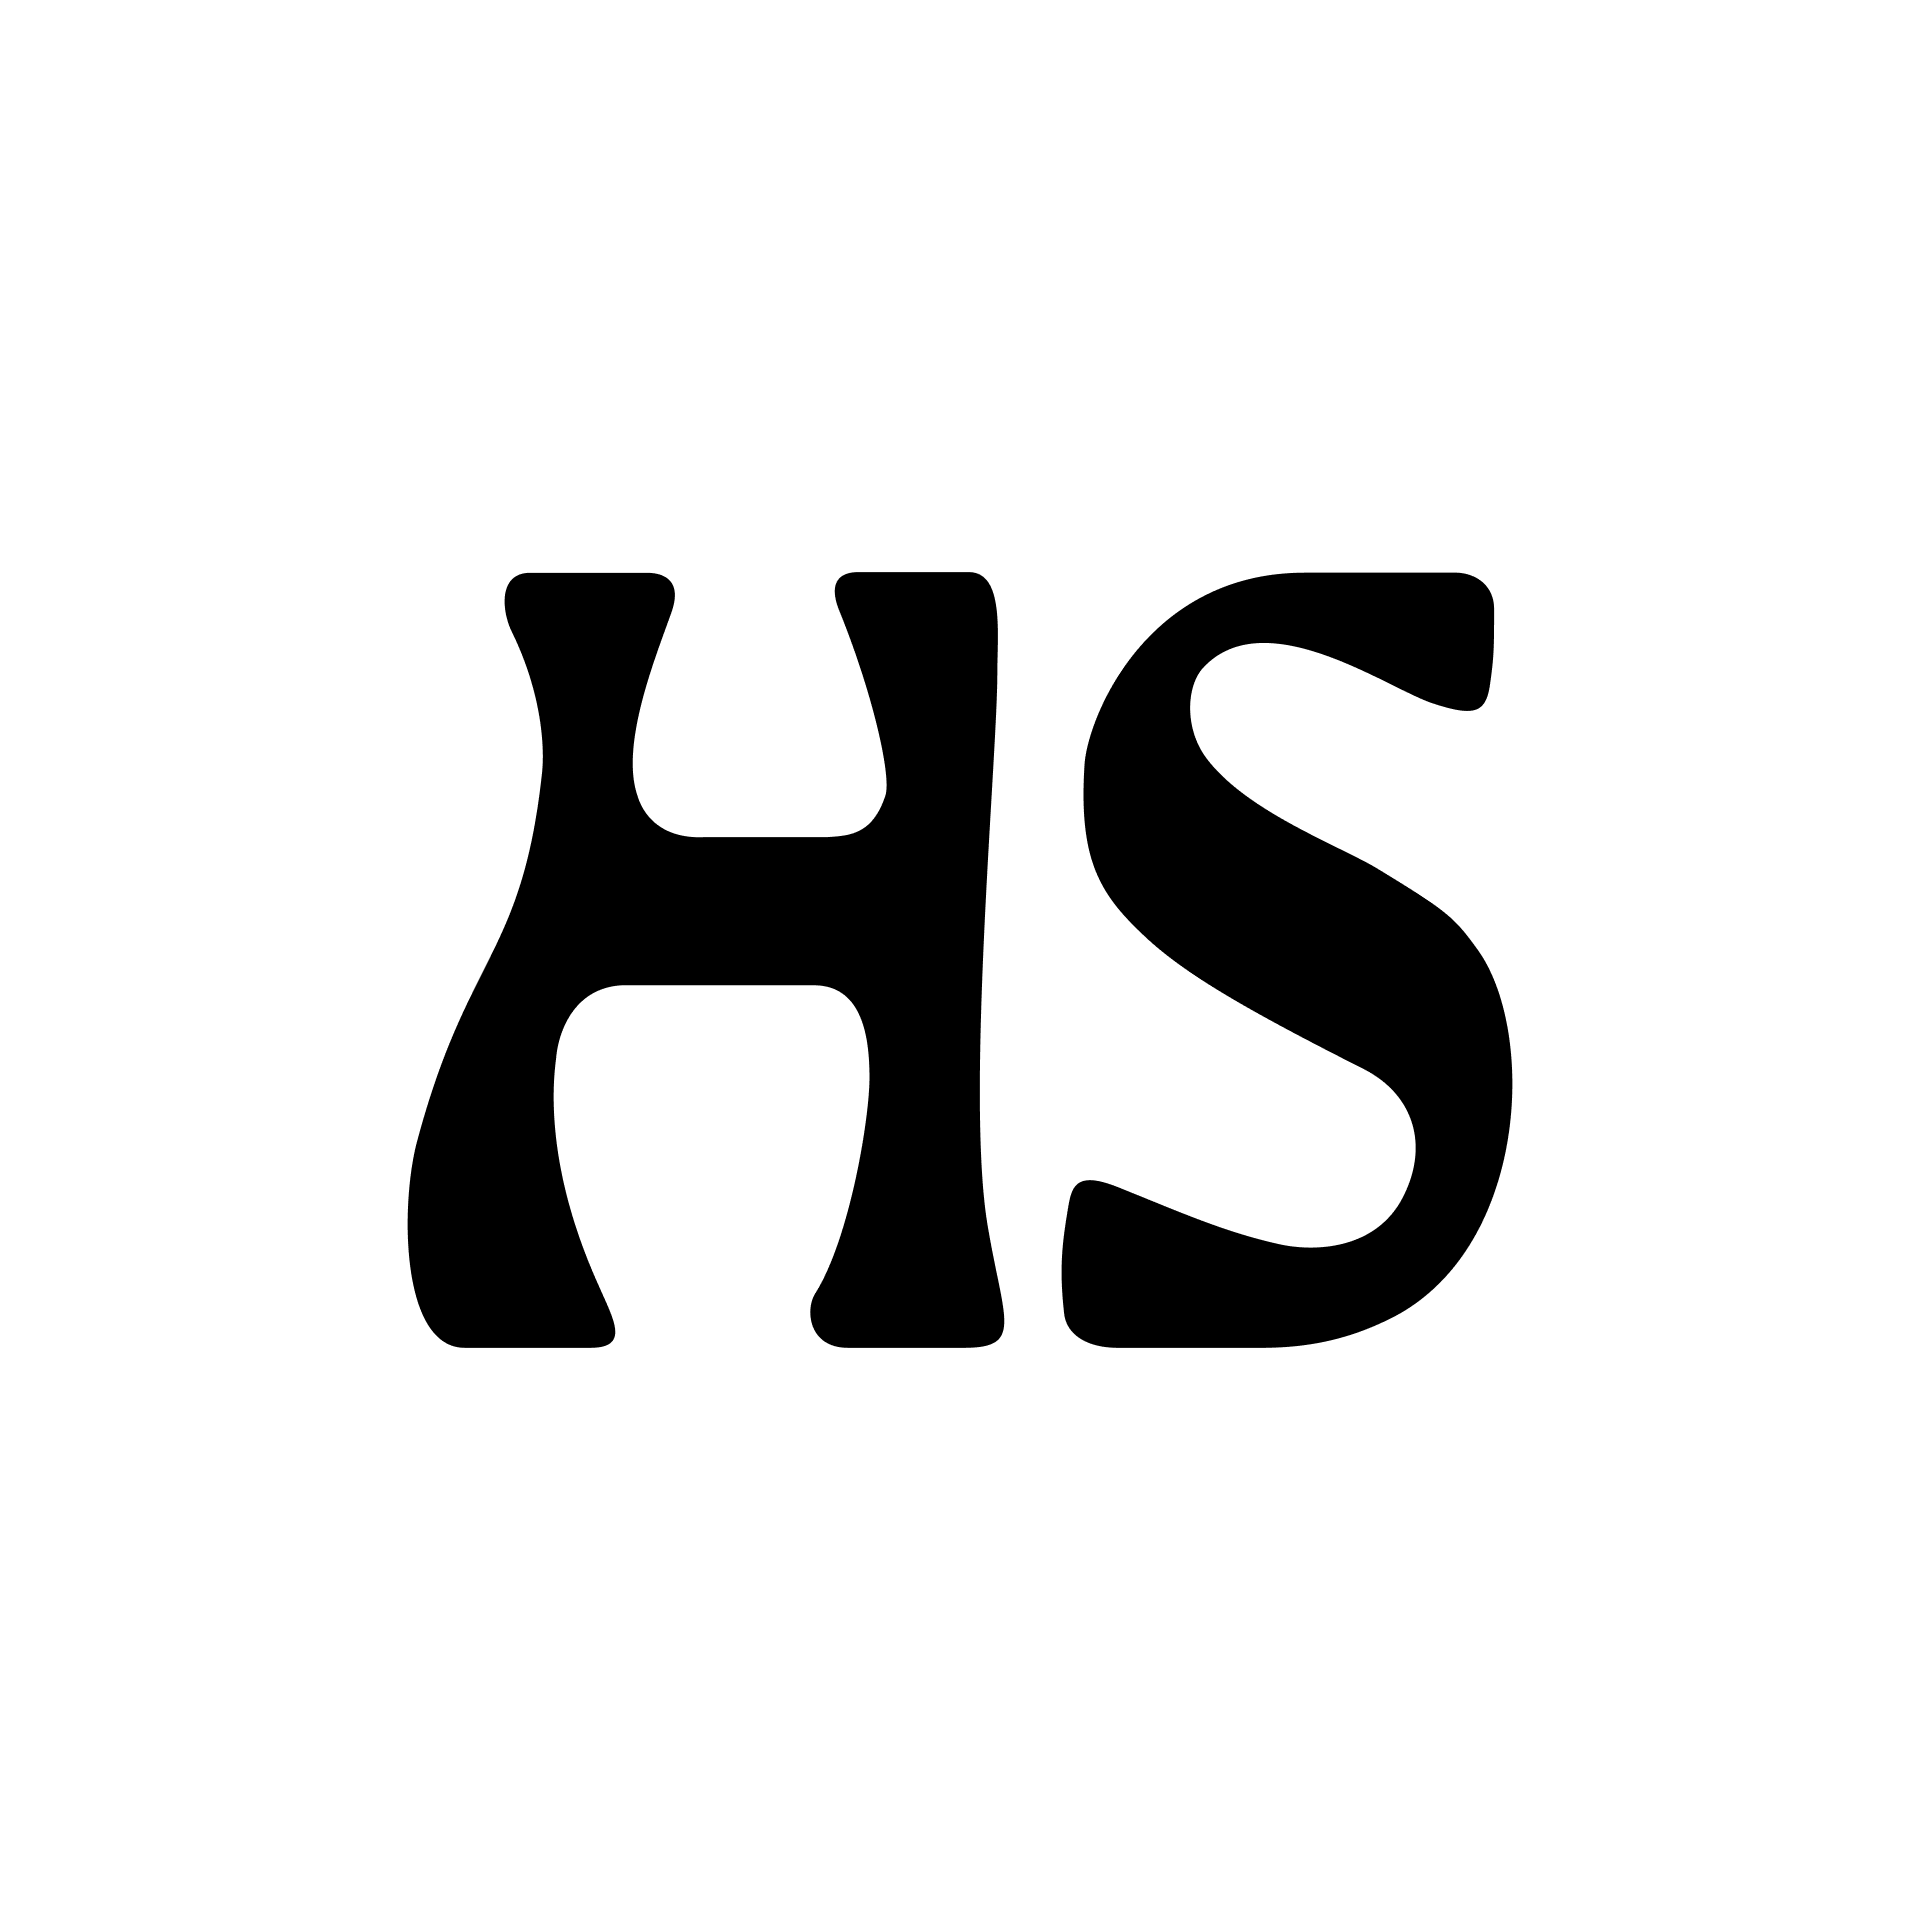 www.hs.fi